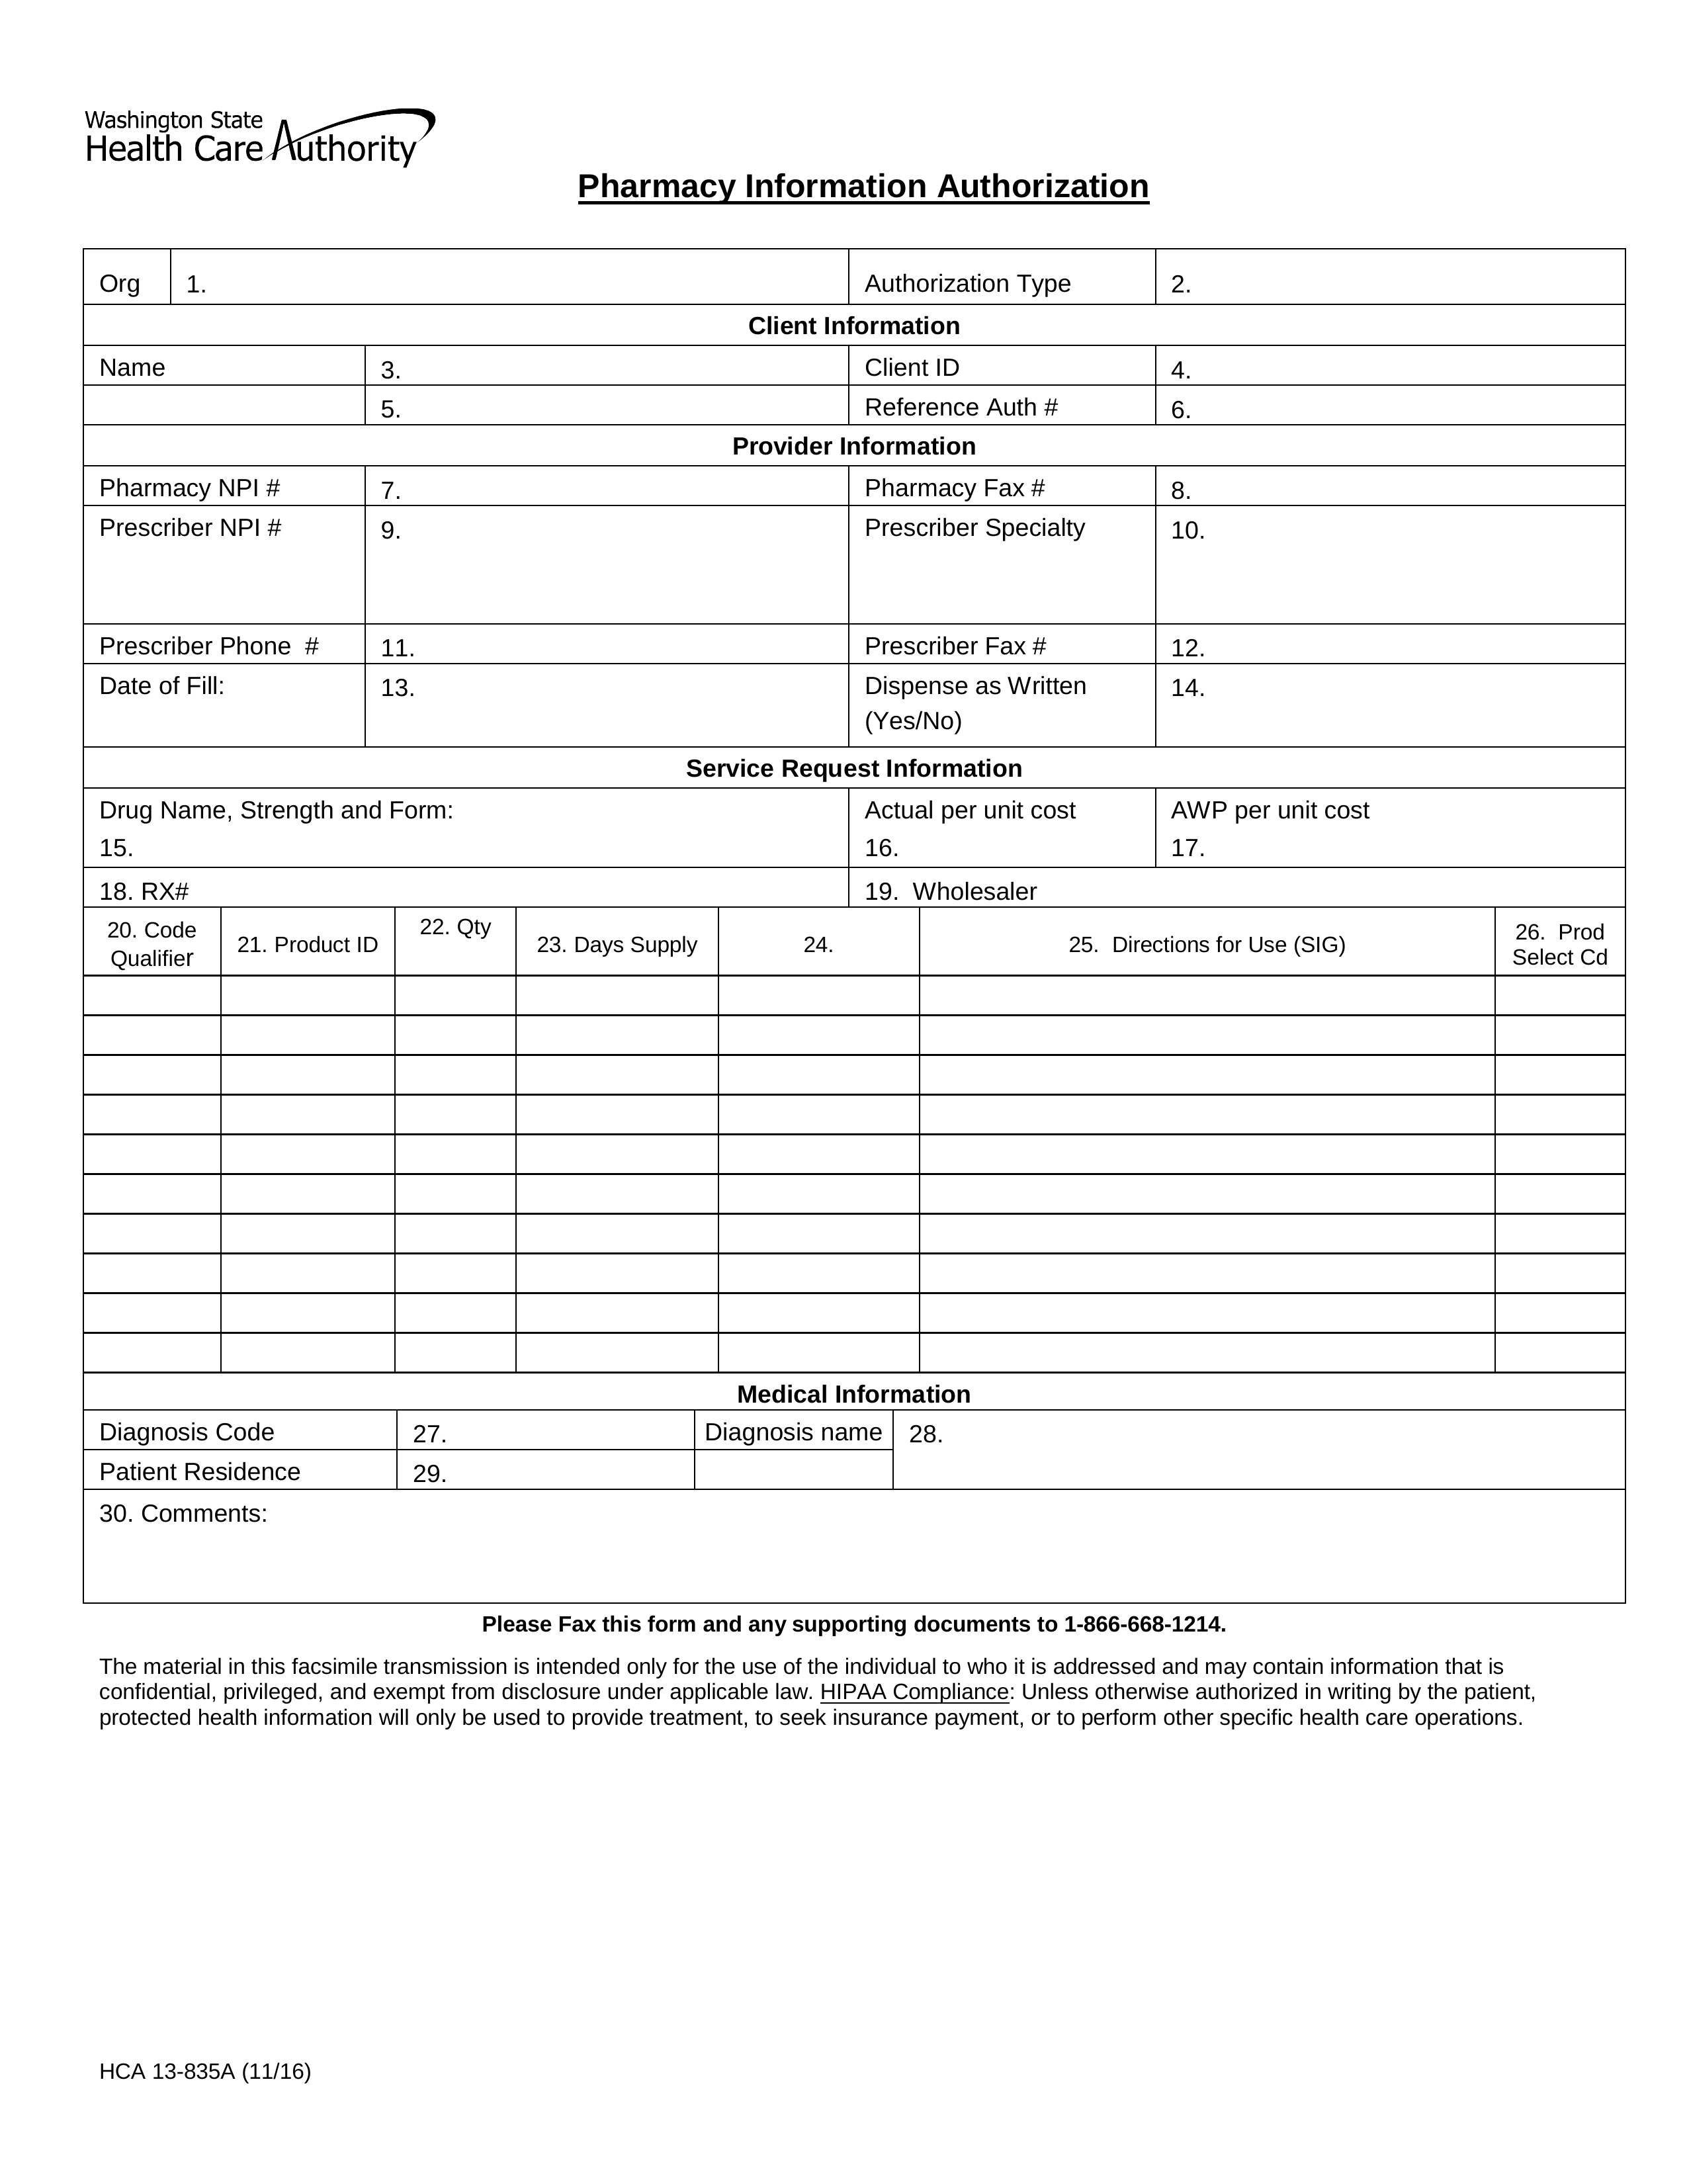 Washington Medicaid Prior Authorization Form